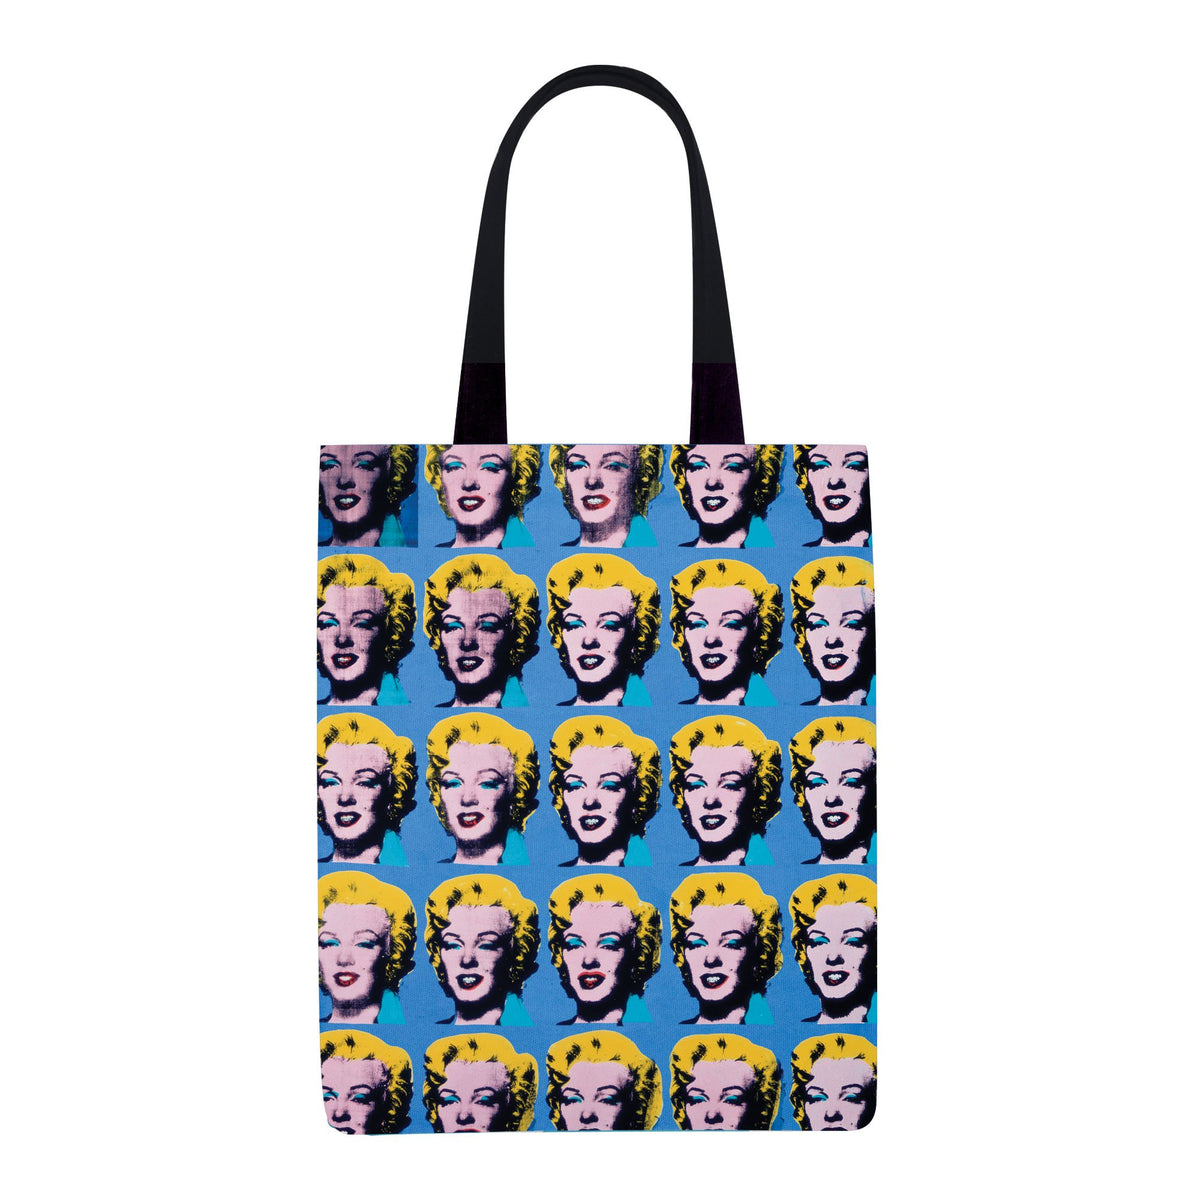 Andy Warhol Marilyn Monroe Tote Bag Tote Bags Galison 